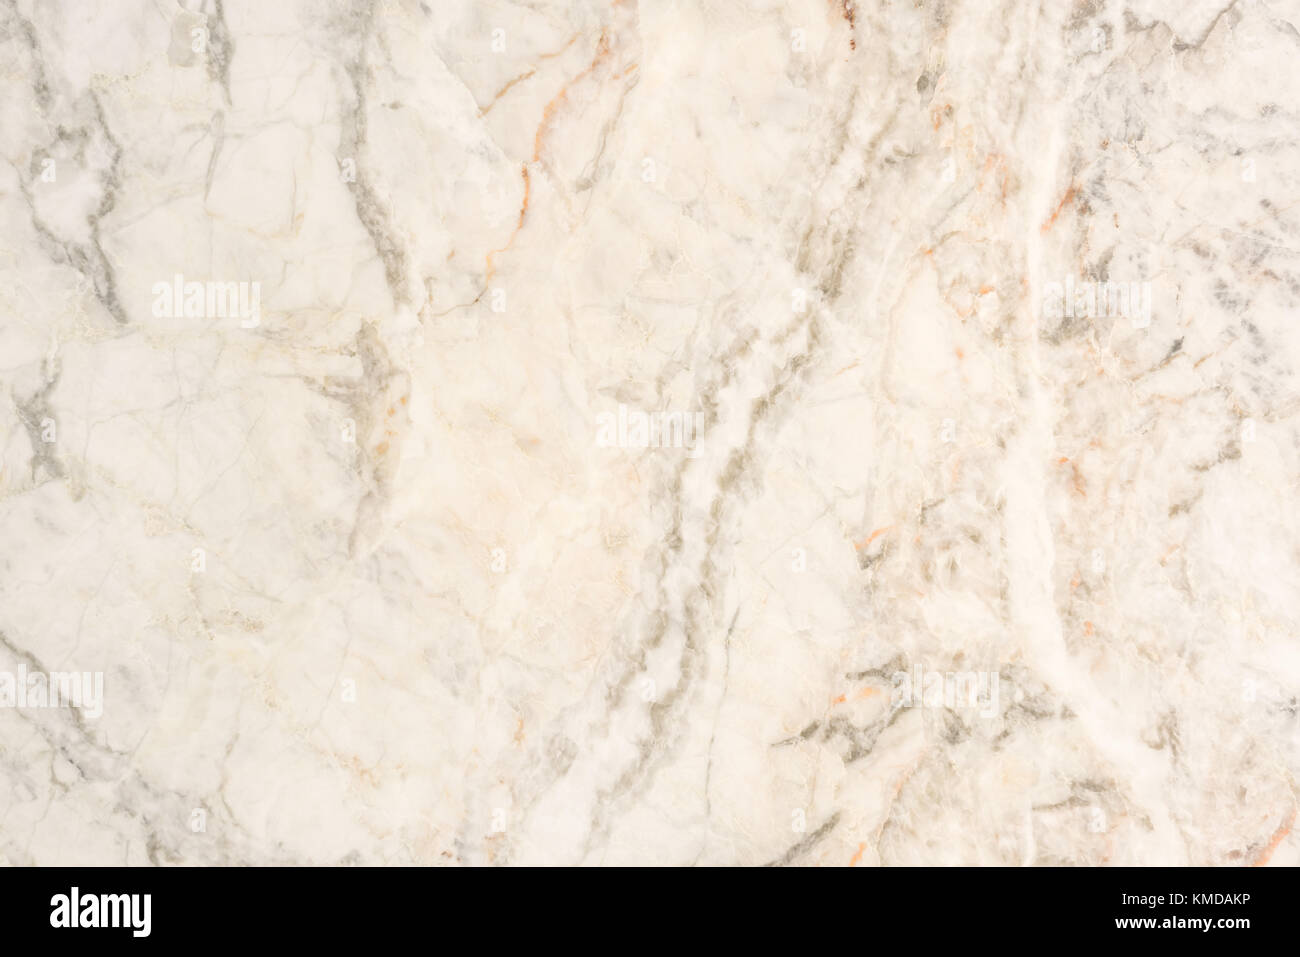 Marmo Beige pietra luce naturale per il bagno o la cucina countertop bianco. Alta risoluzione texture e pattern. Foto Stock